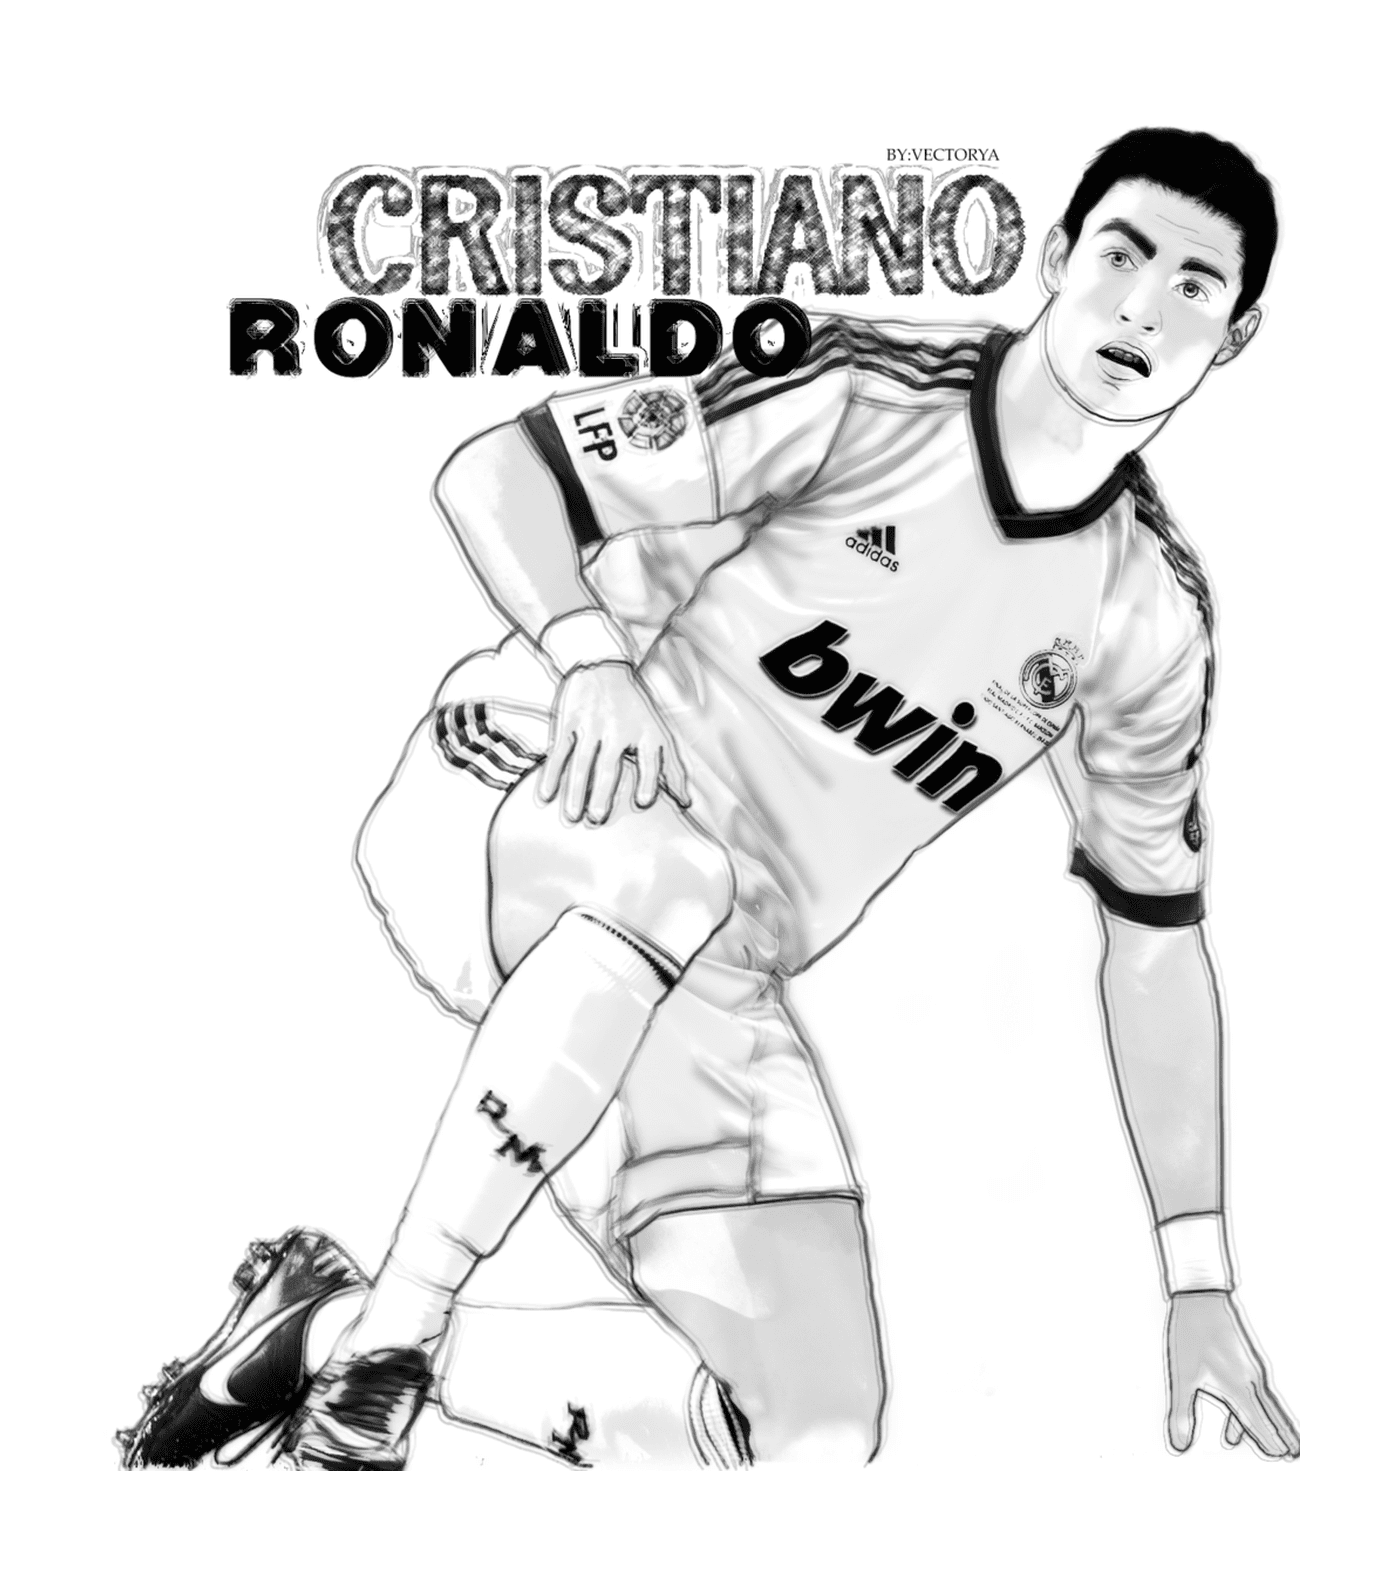  Cristiano Ronaldo überrascht, ein Vektor 